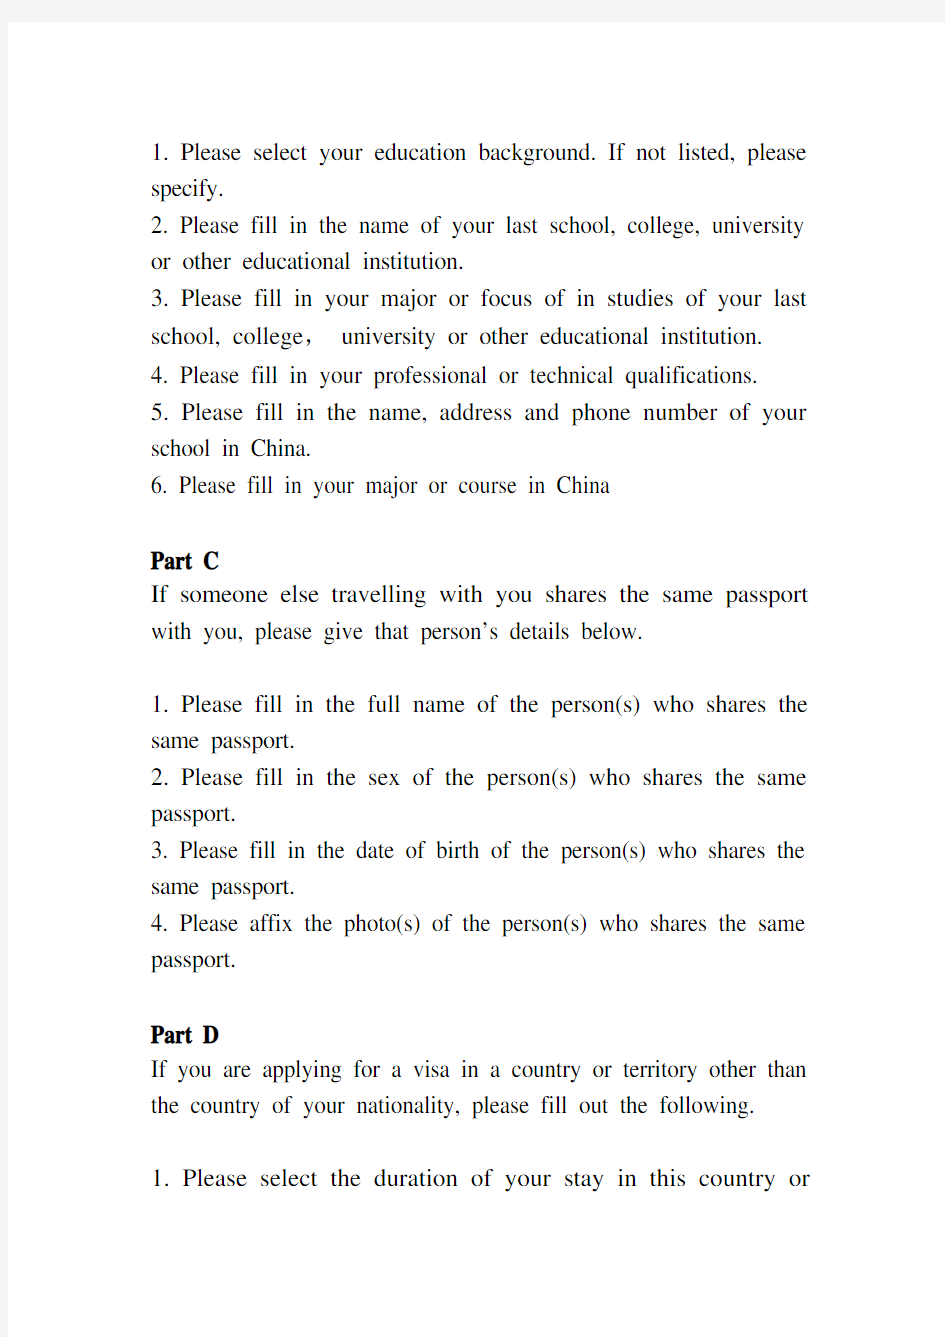 中华人民共和国签证申请表(附表)填表说明(英文版)